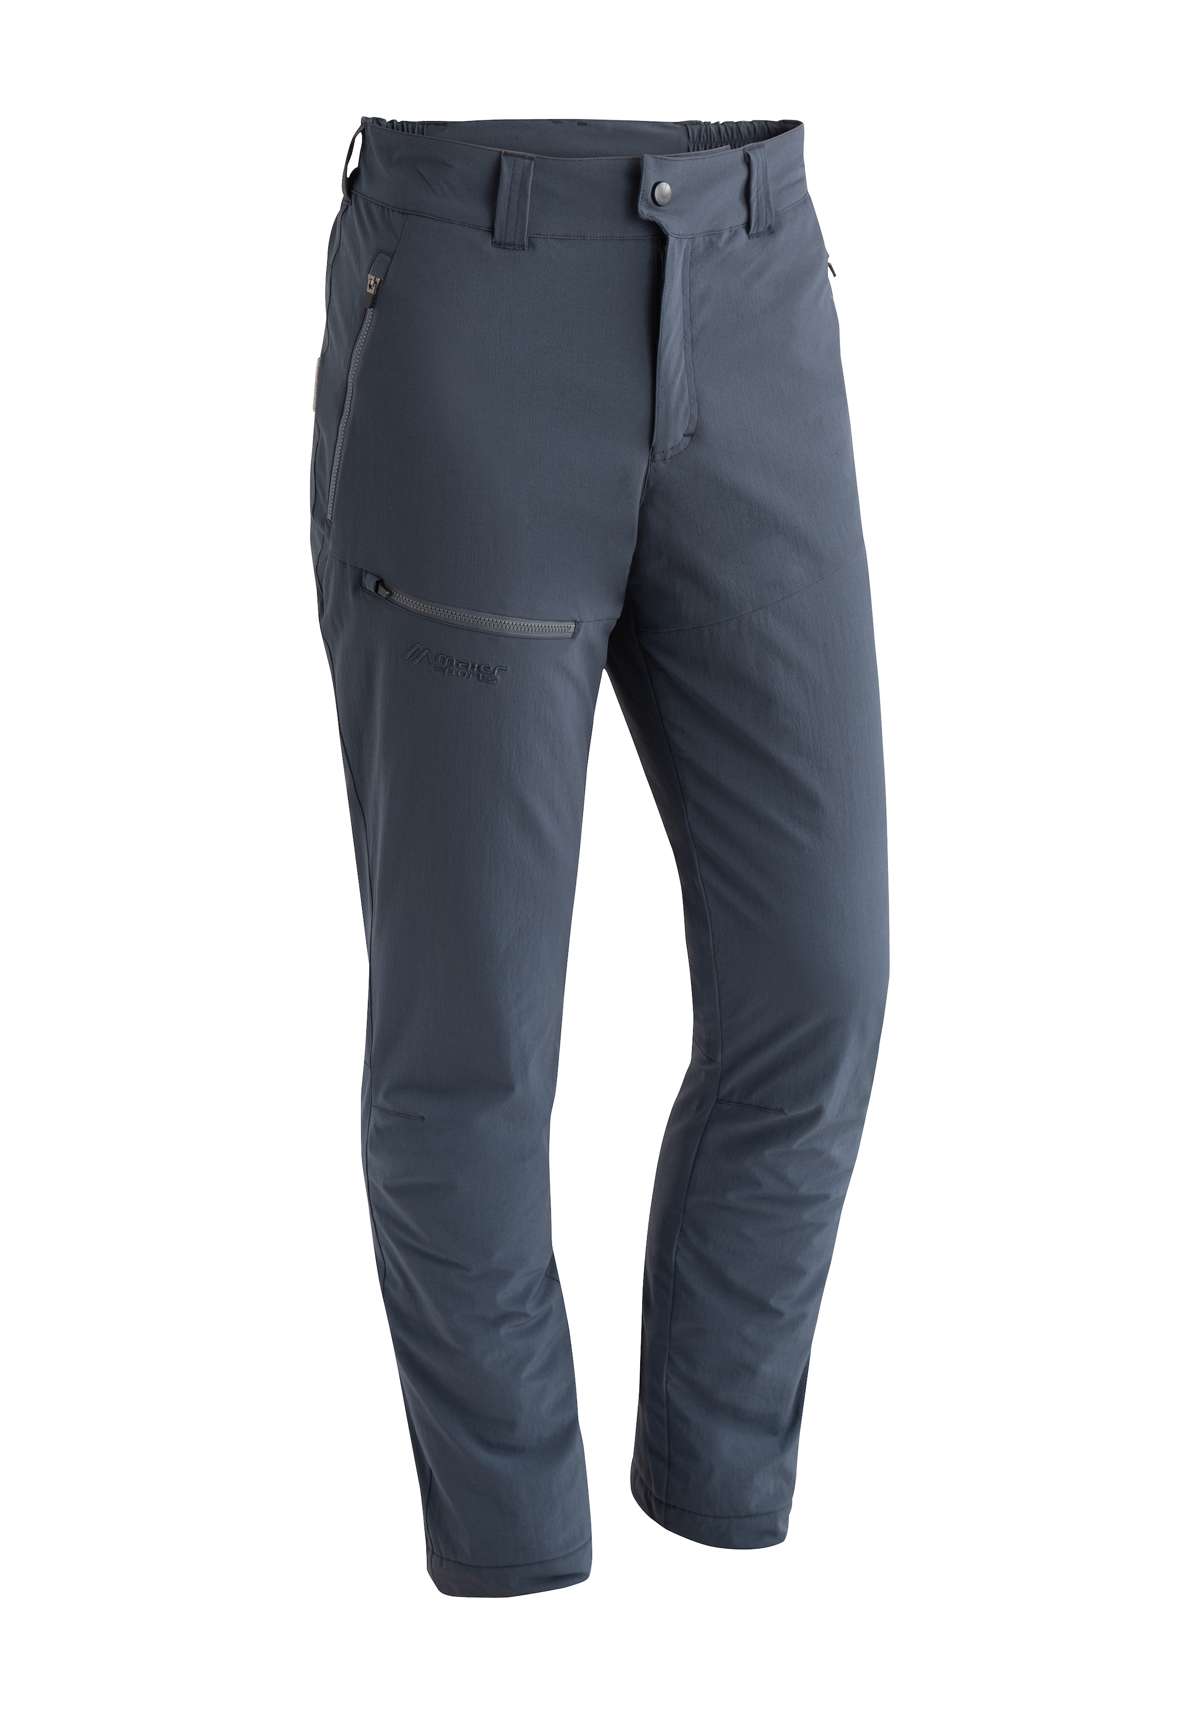 Уличные брюки, мужские походные брюки, зимние функциональные брюки на шерстяной подкладке.